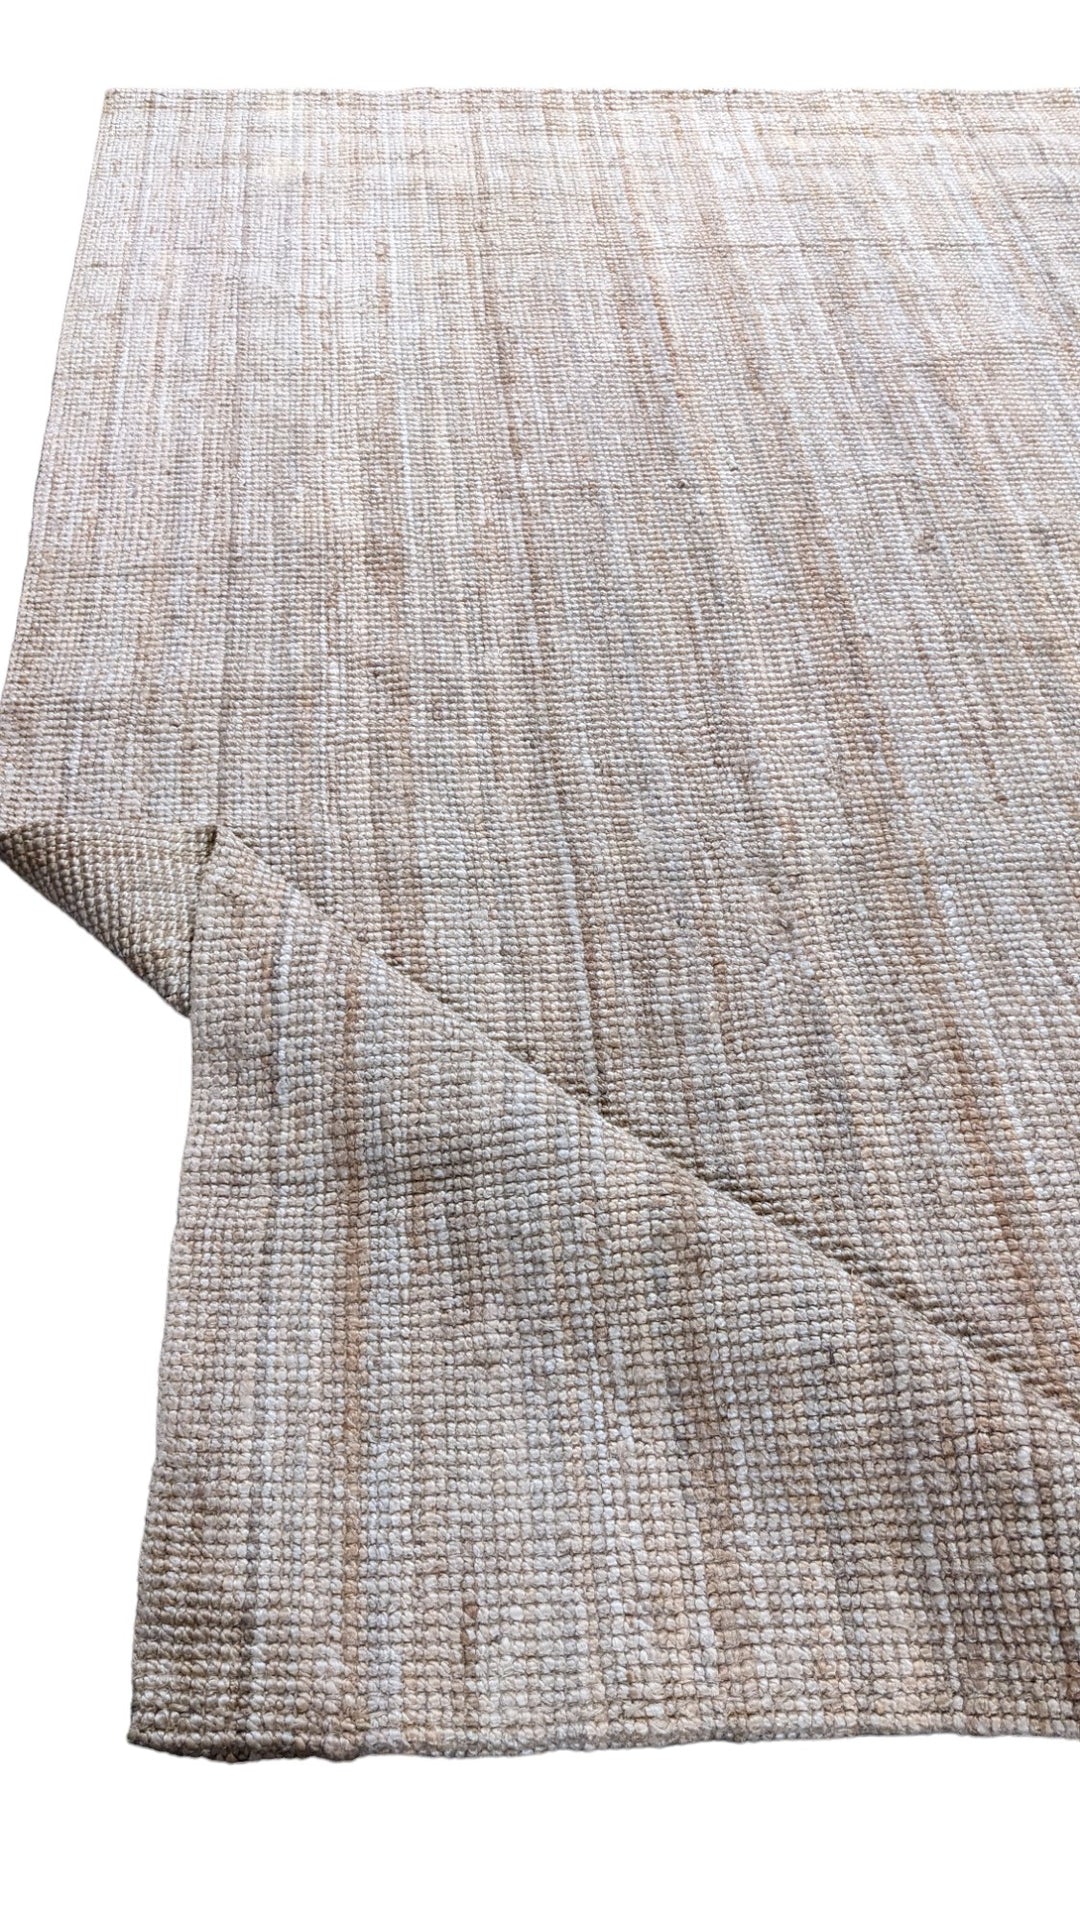 Dust - Size: 9.4 x 6.6 - Imam Carpet Co